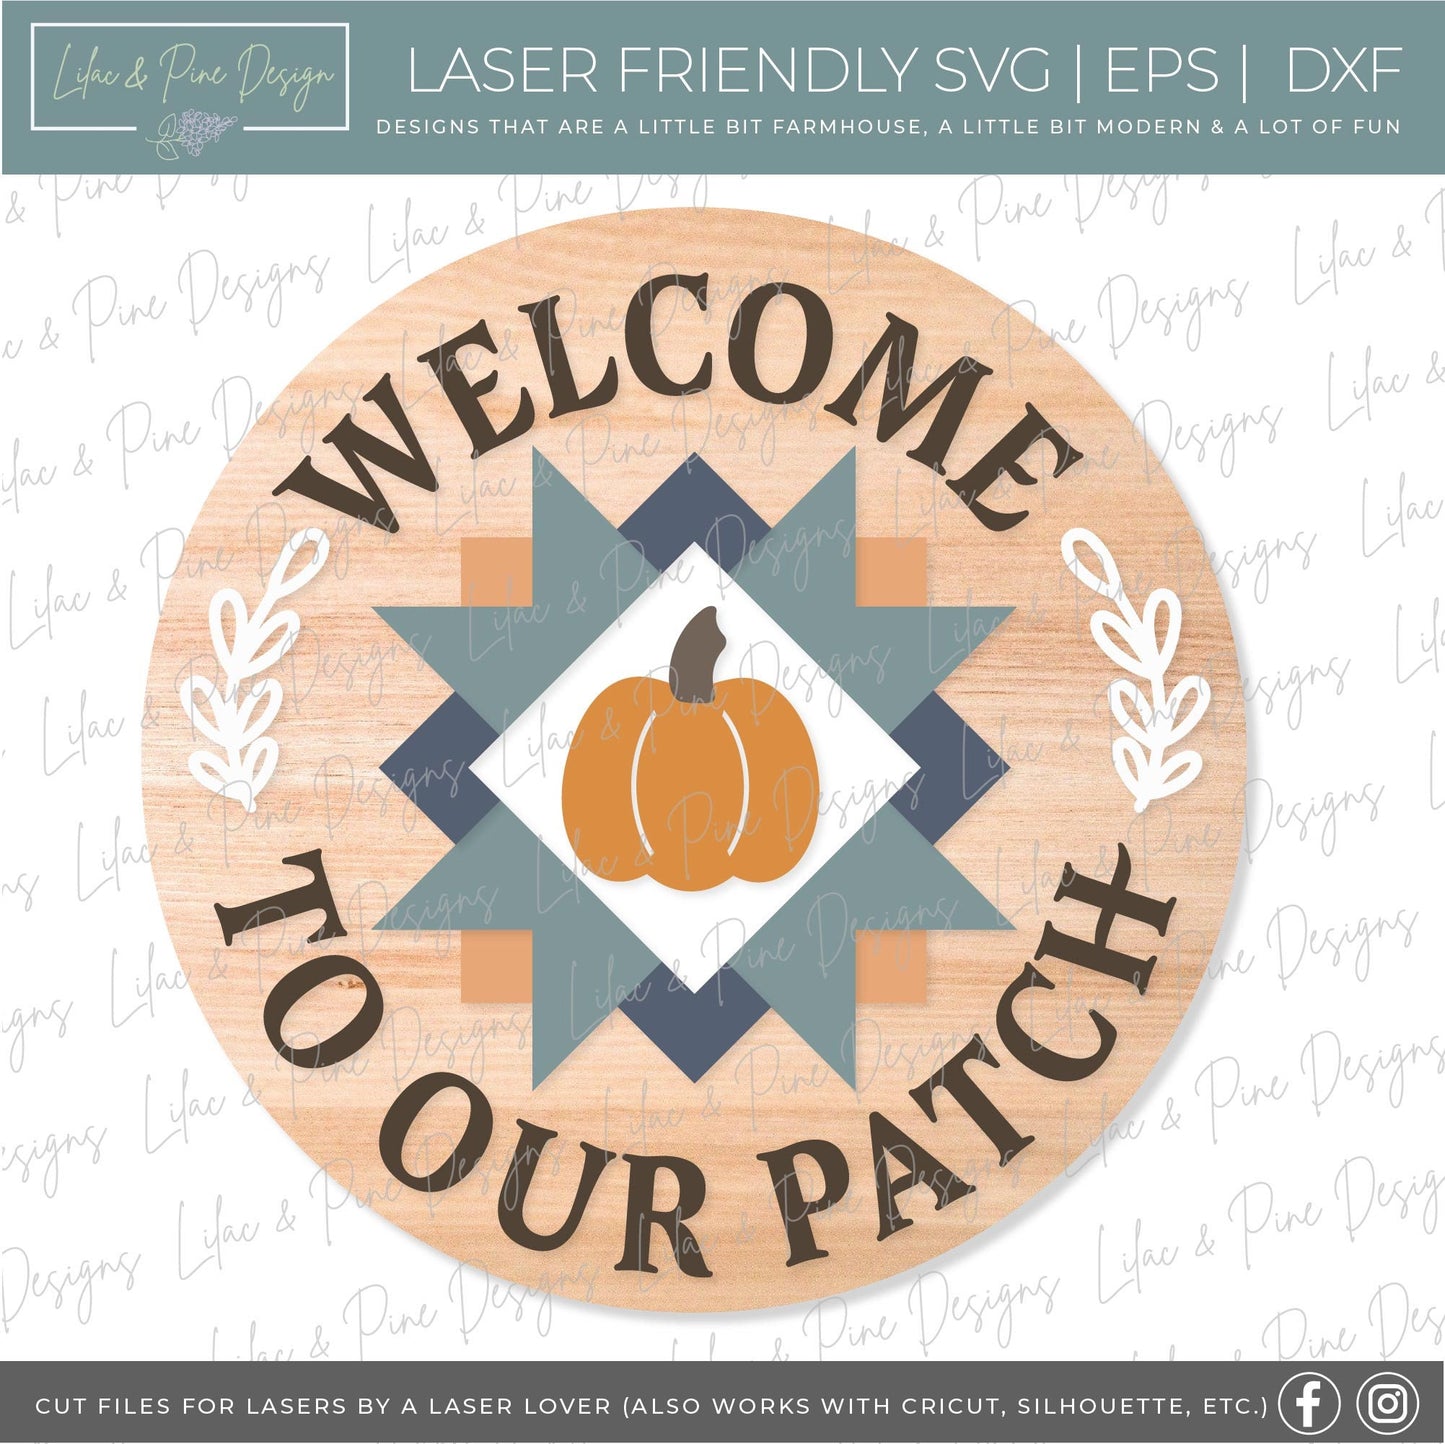 Pumpkin Patch door hanger SVG, Fall Quilt door hanger, Quilt welcome sign SVG, Pumpkin welcome sign svg, fall decor, Glowforge laser SVG